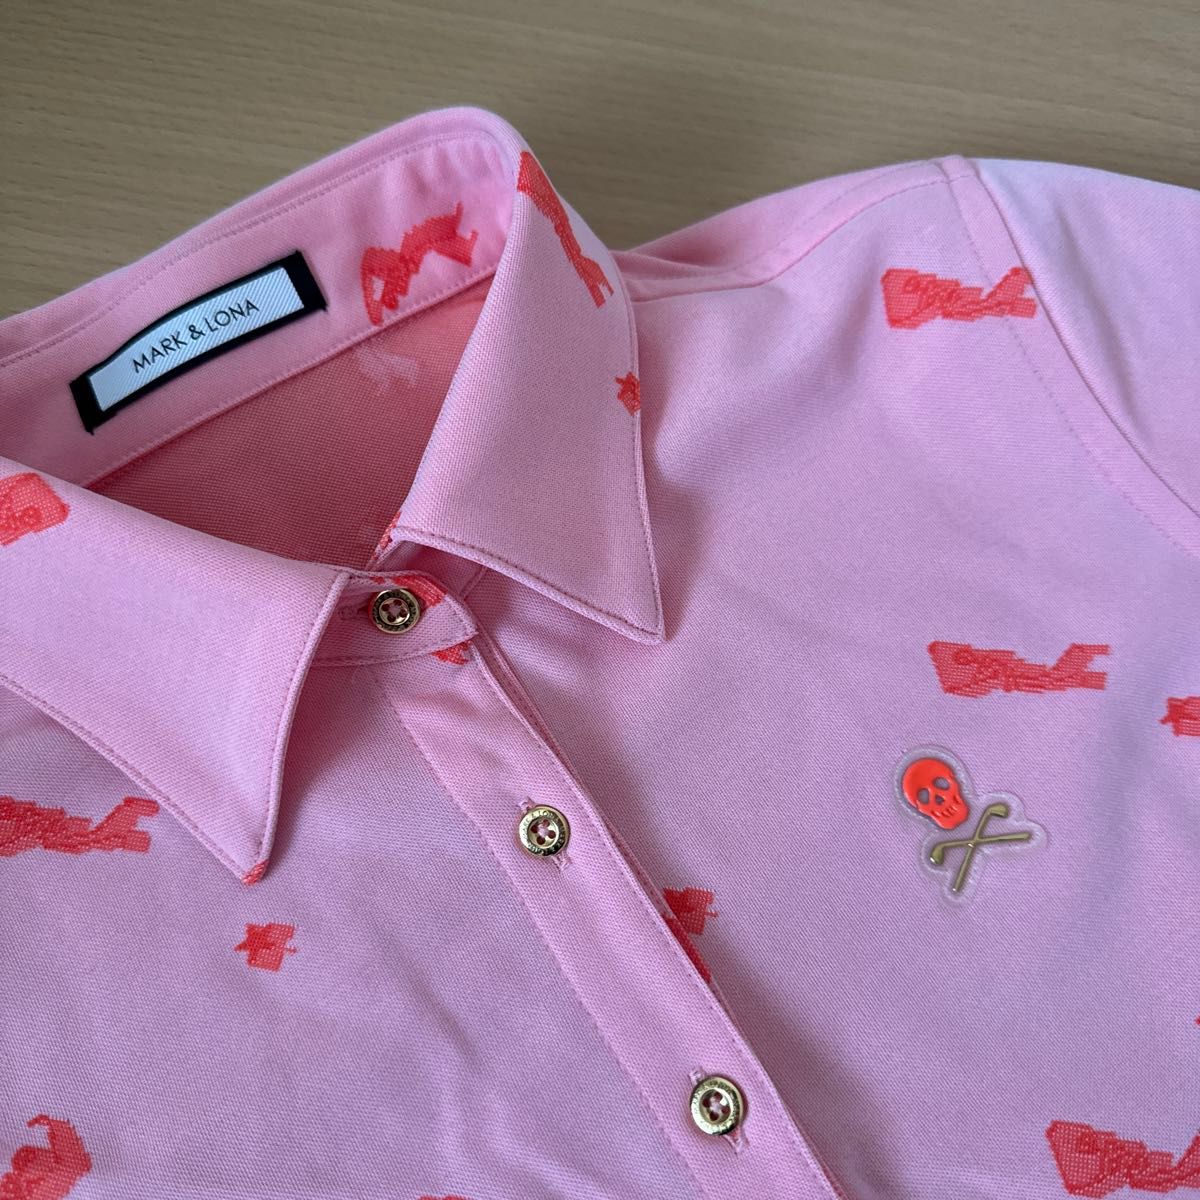 即購入OK 美品 マークアンドロナ mark&lona ポロシャツ 半袖 38 M レディース サーモン ピンク パーリーゲイツ